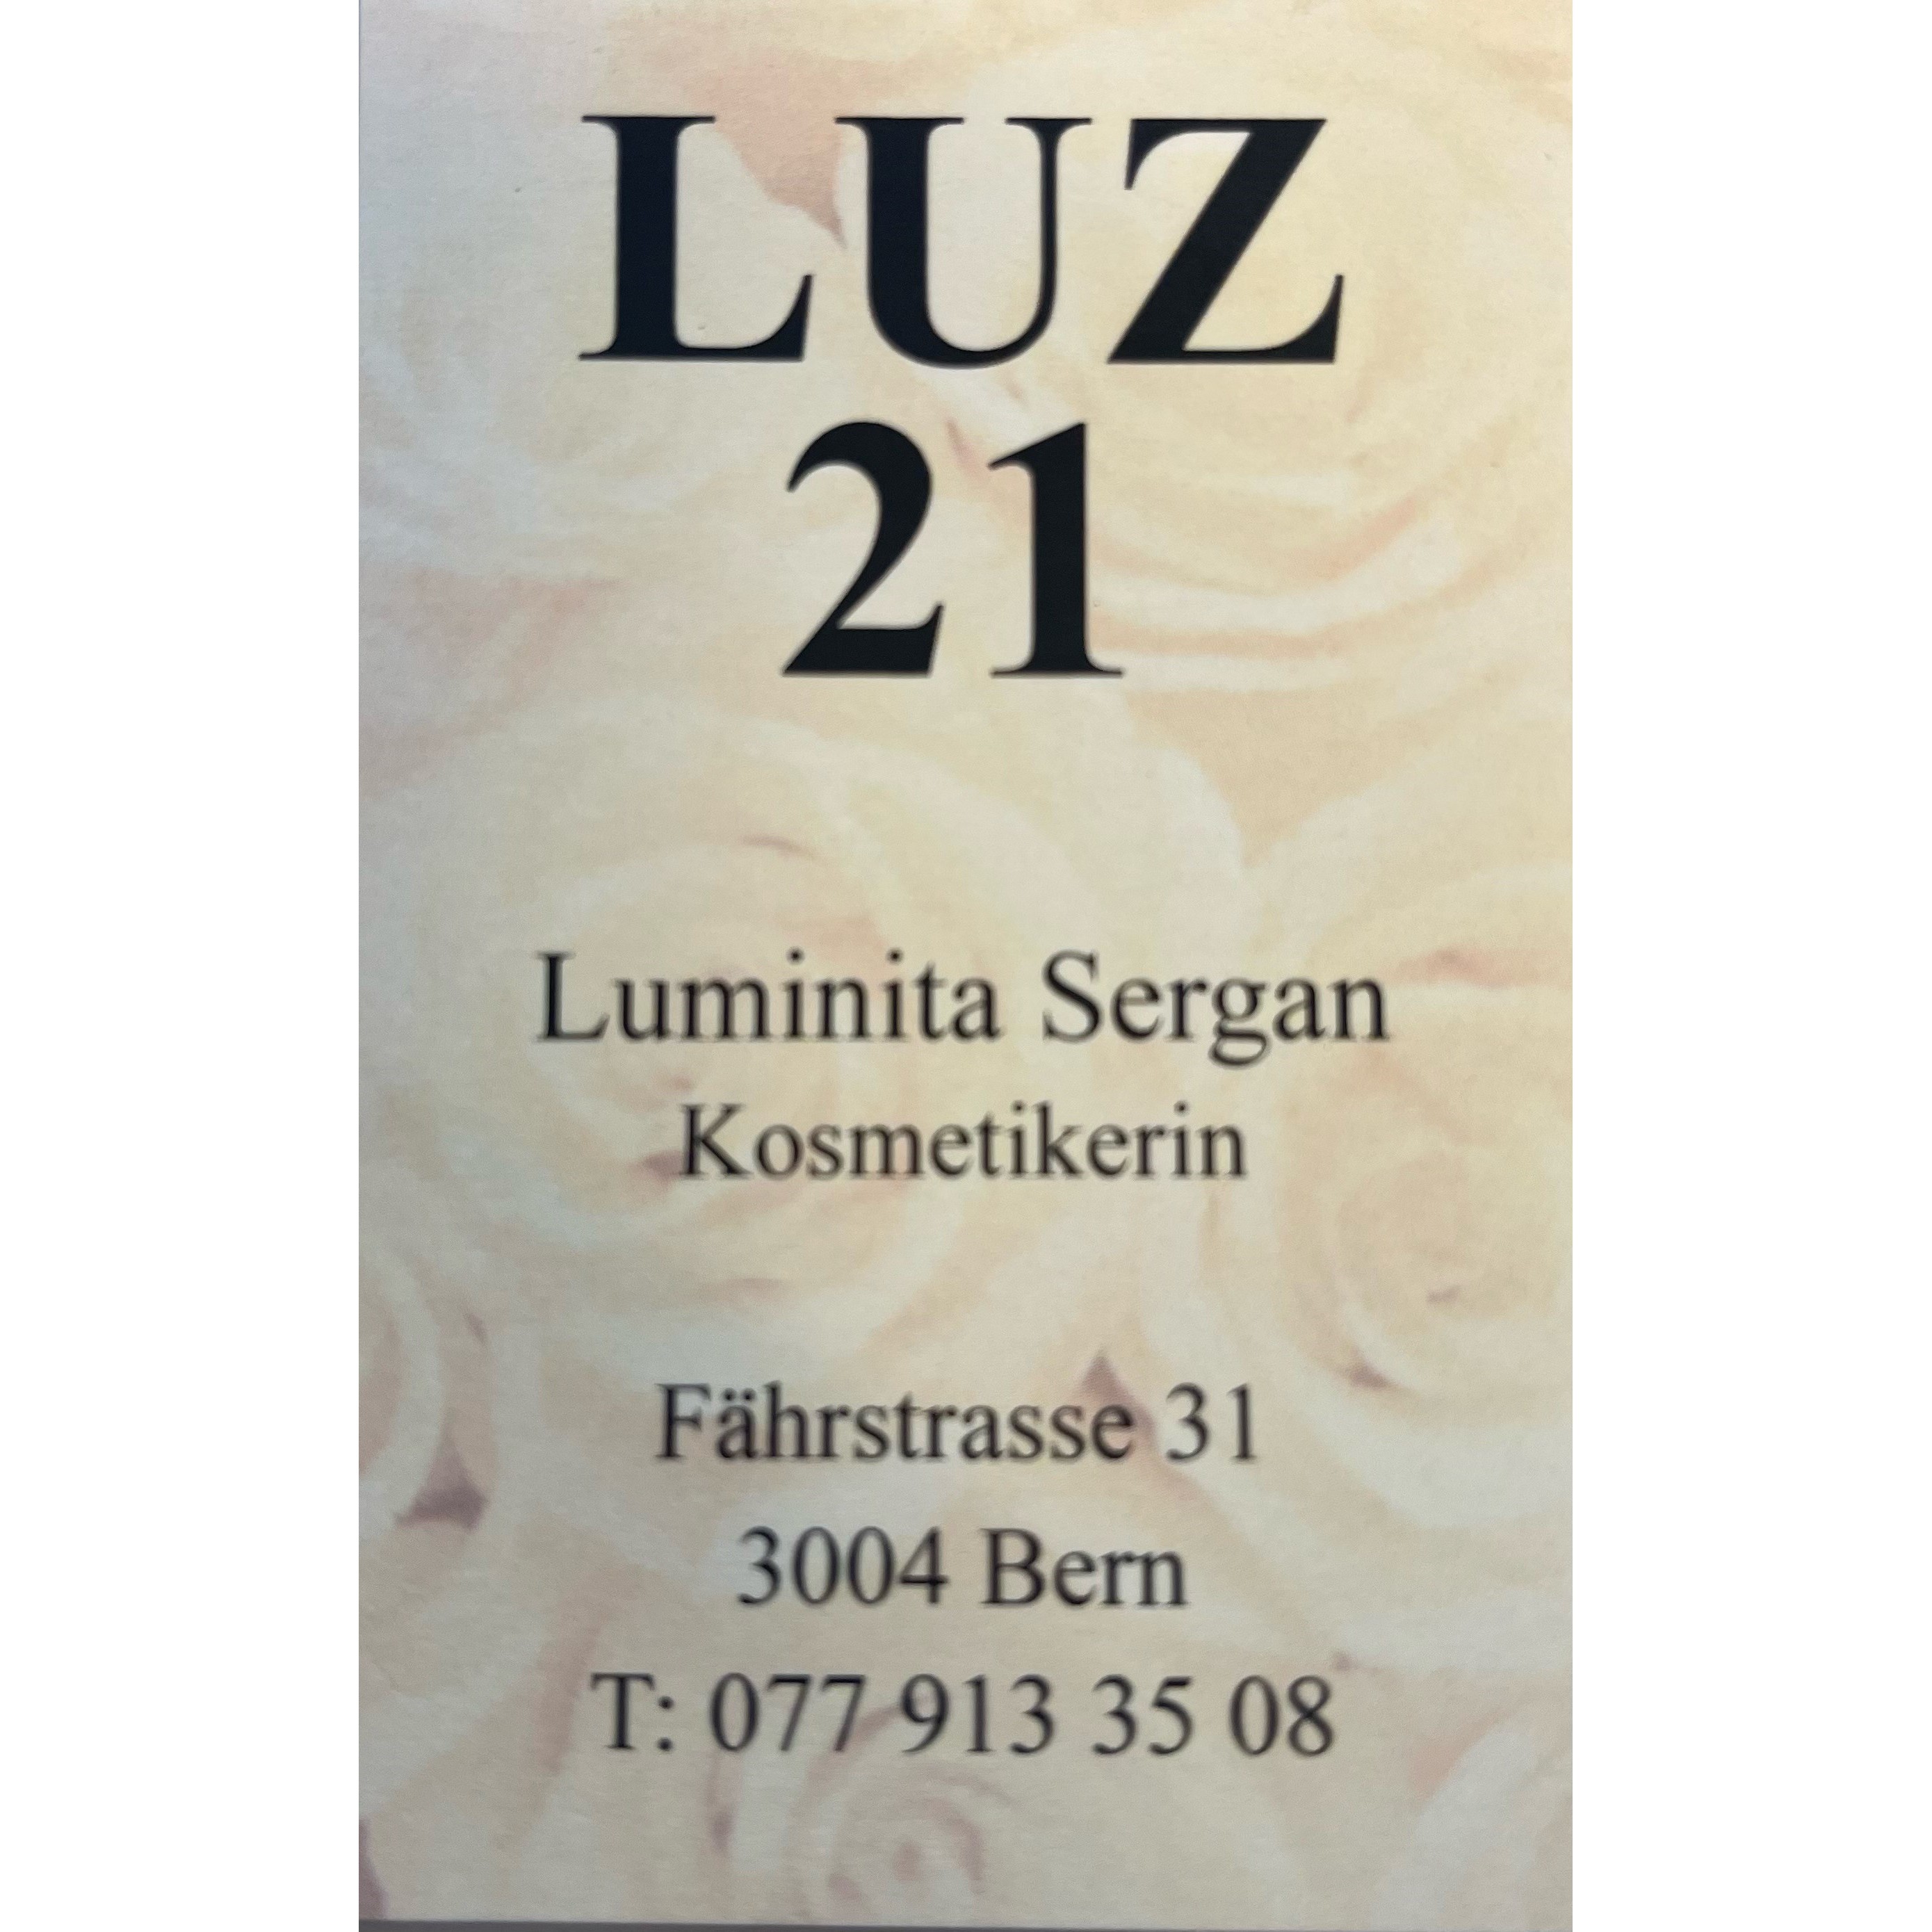 LUZ 21 Inh. Luminita Sergan Logo